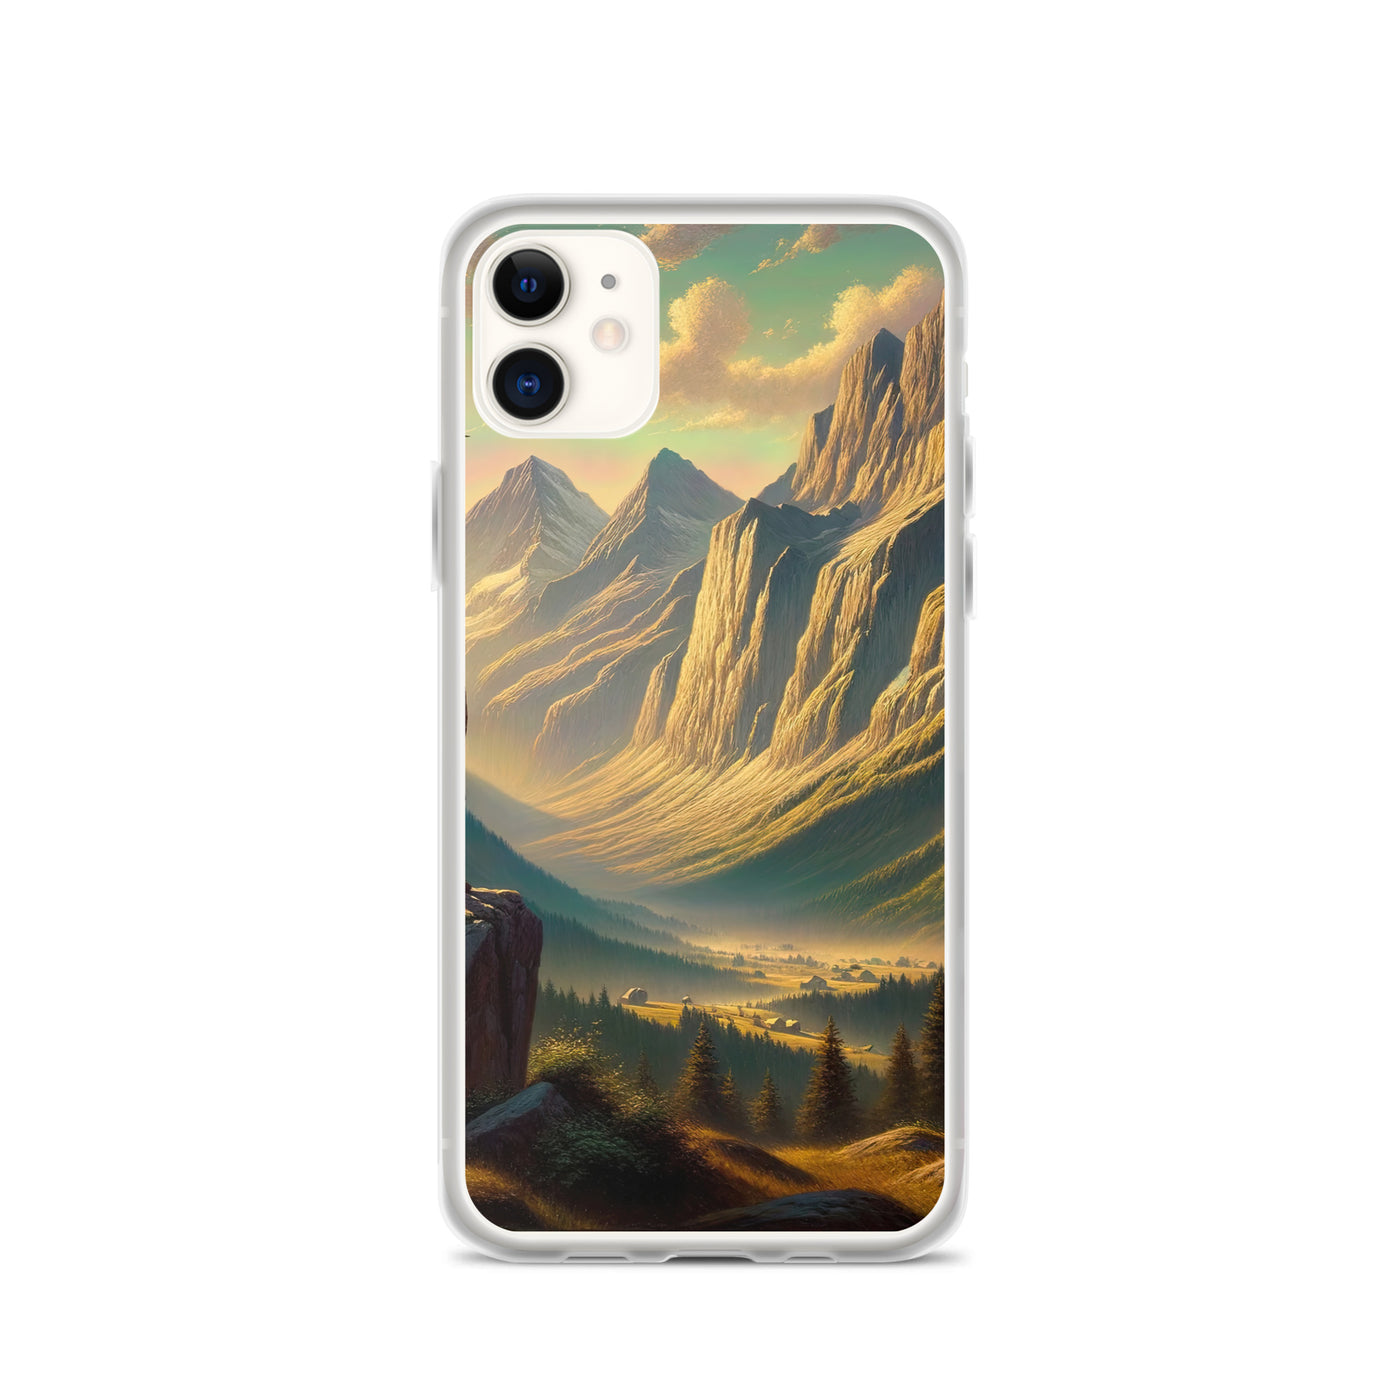 Ölgemälde eines Schweizer Wanderers in den Alpen bei goldenem Sonnenlicht - iPhone Schutzhülle (durchsichtig) wandern xxx yyy zzz iPhone 11